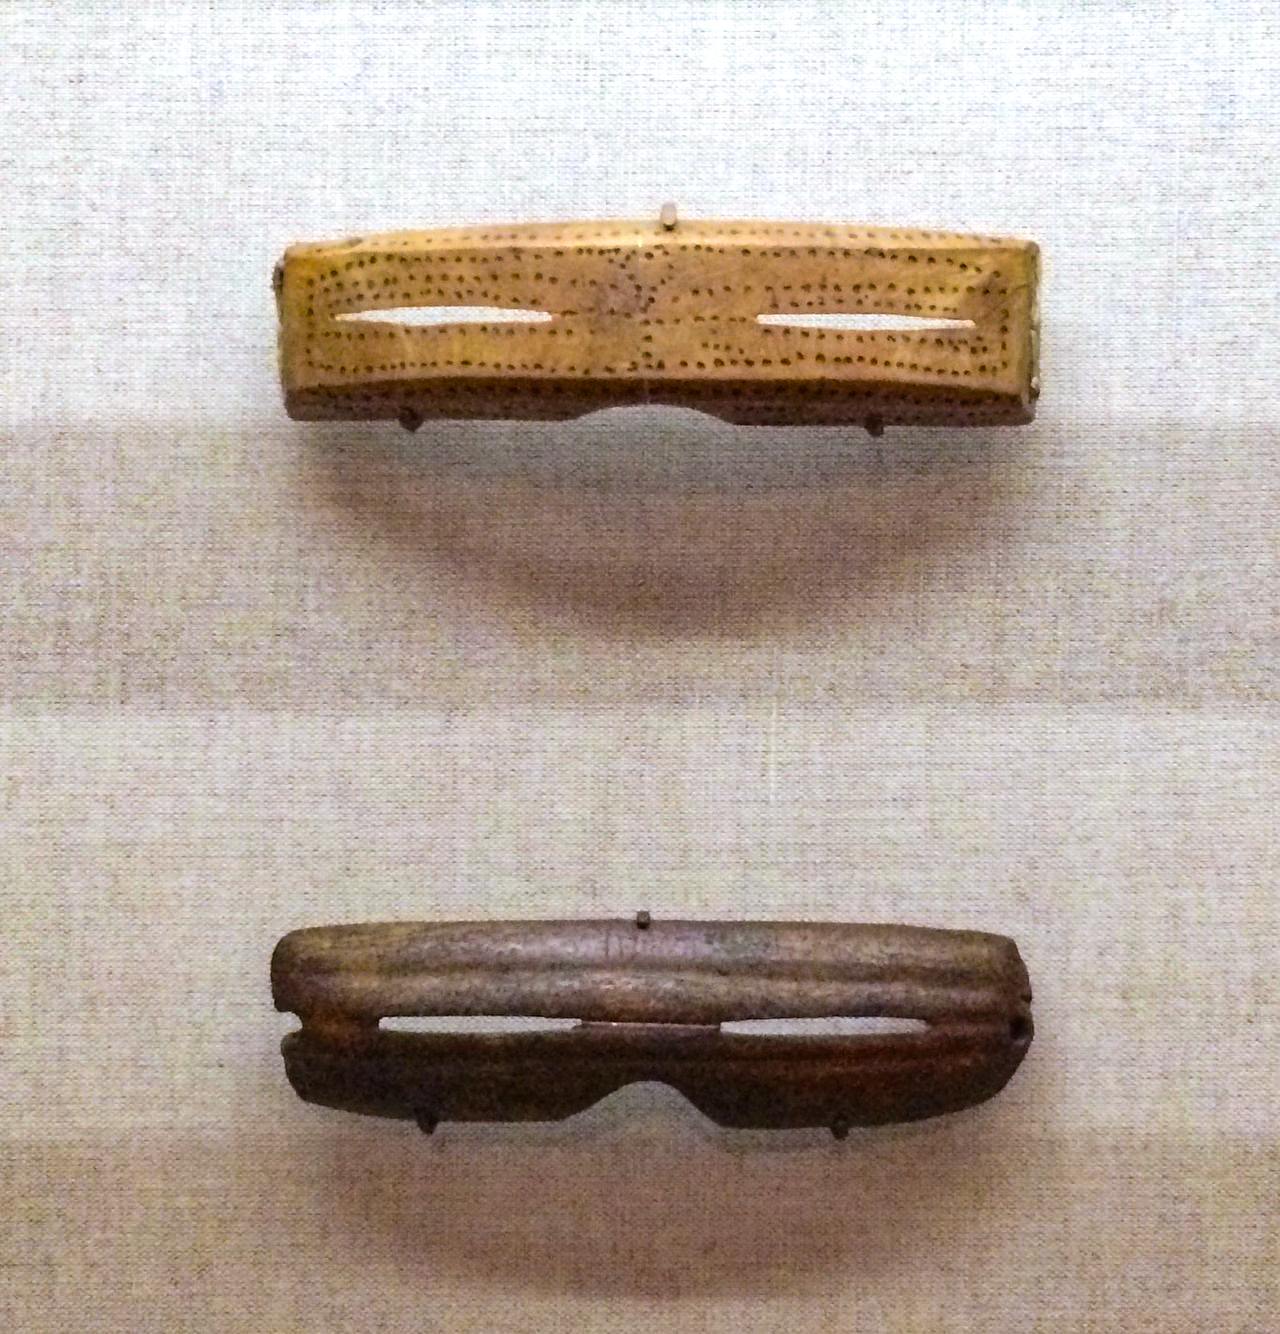 હાડકાં, હાથીદાંત, લાકડા અથવા શિંગડામાંથી કોતરવામાં આવેલા ઇન્યુટ સ્નો ગોગલ્સ 3